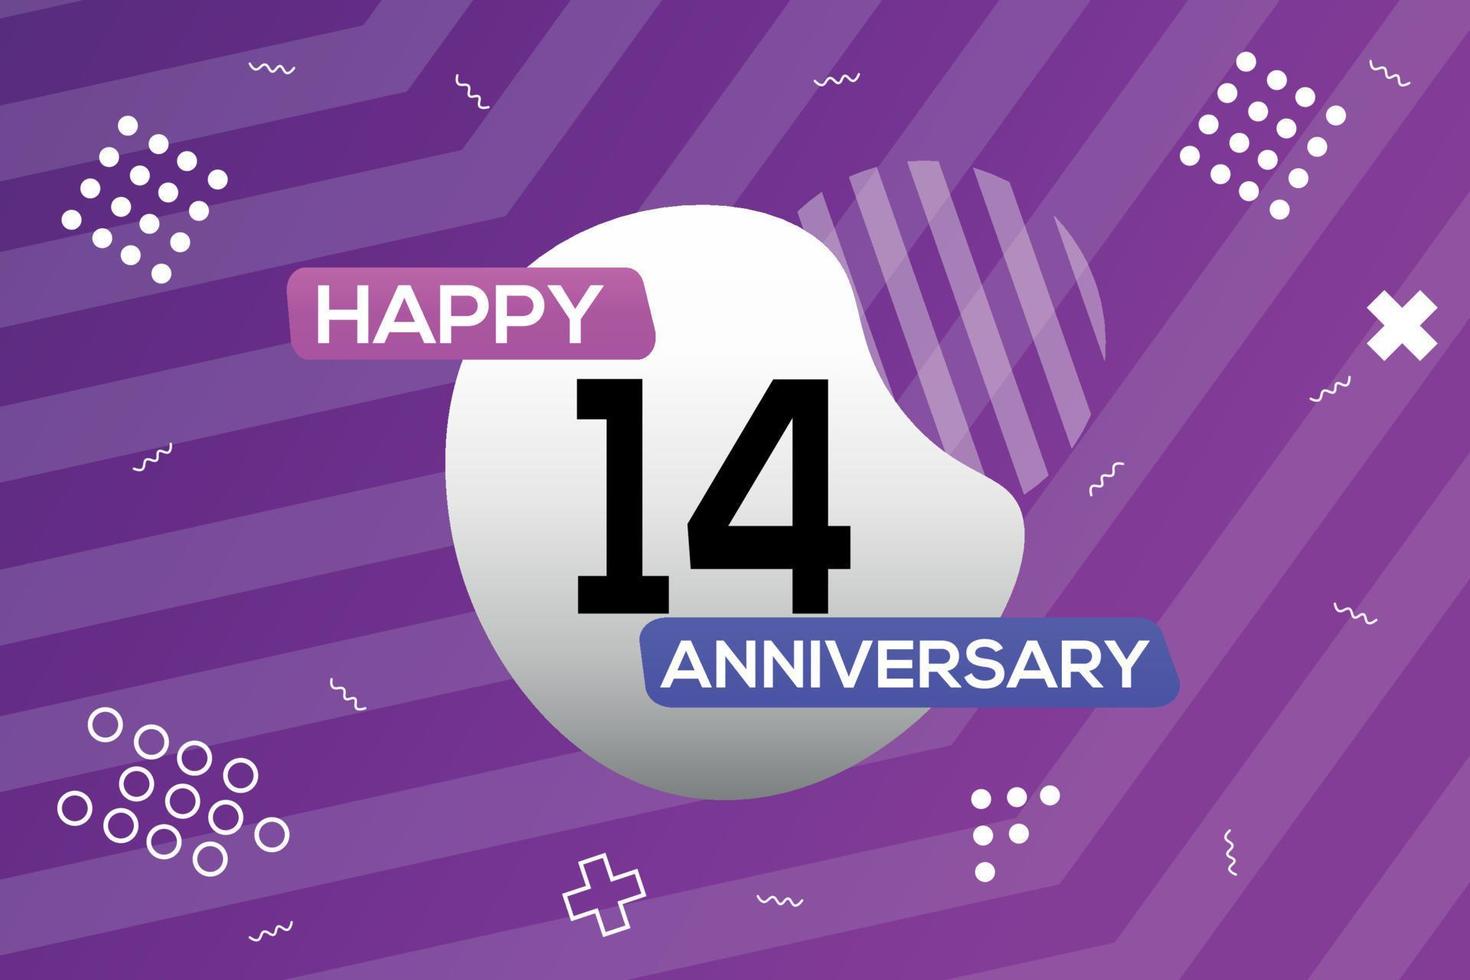 14:e år årsdag logotyp vektor design årsdag firande med färgrik geometrisk former abstrakt illustration